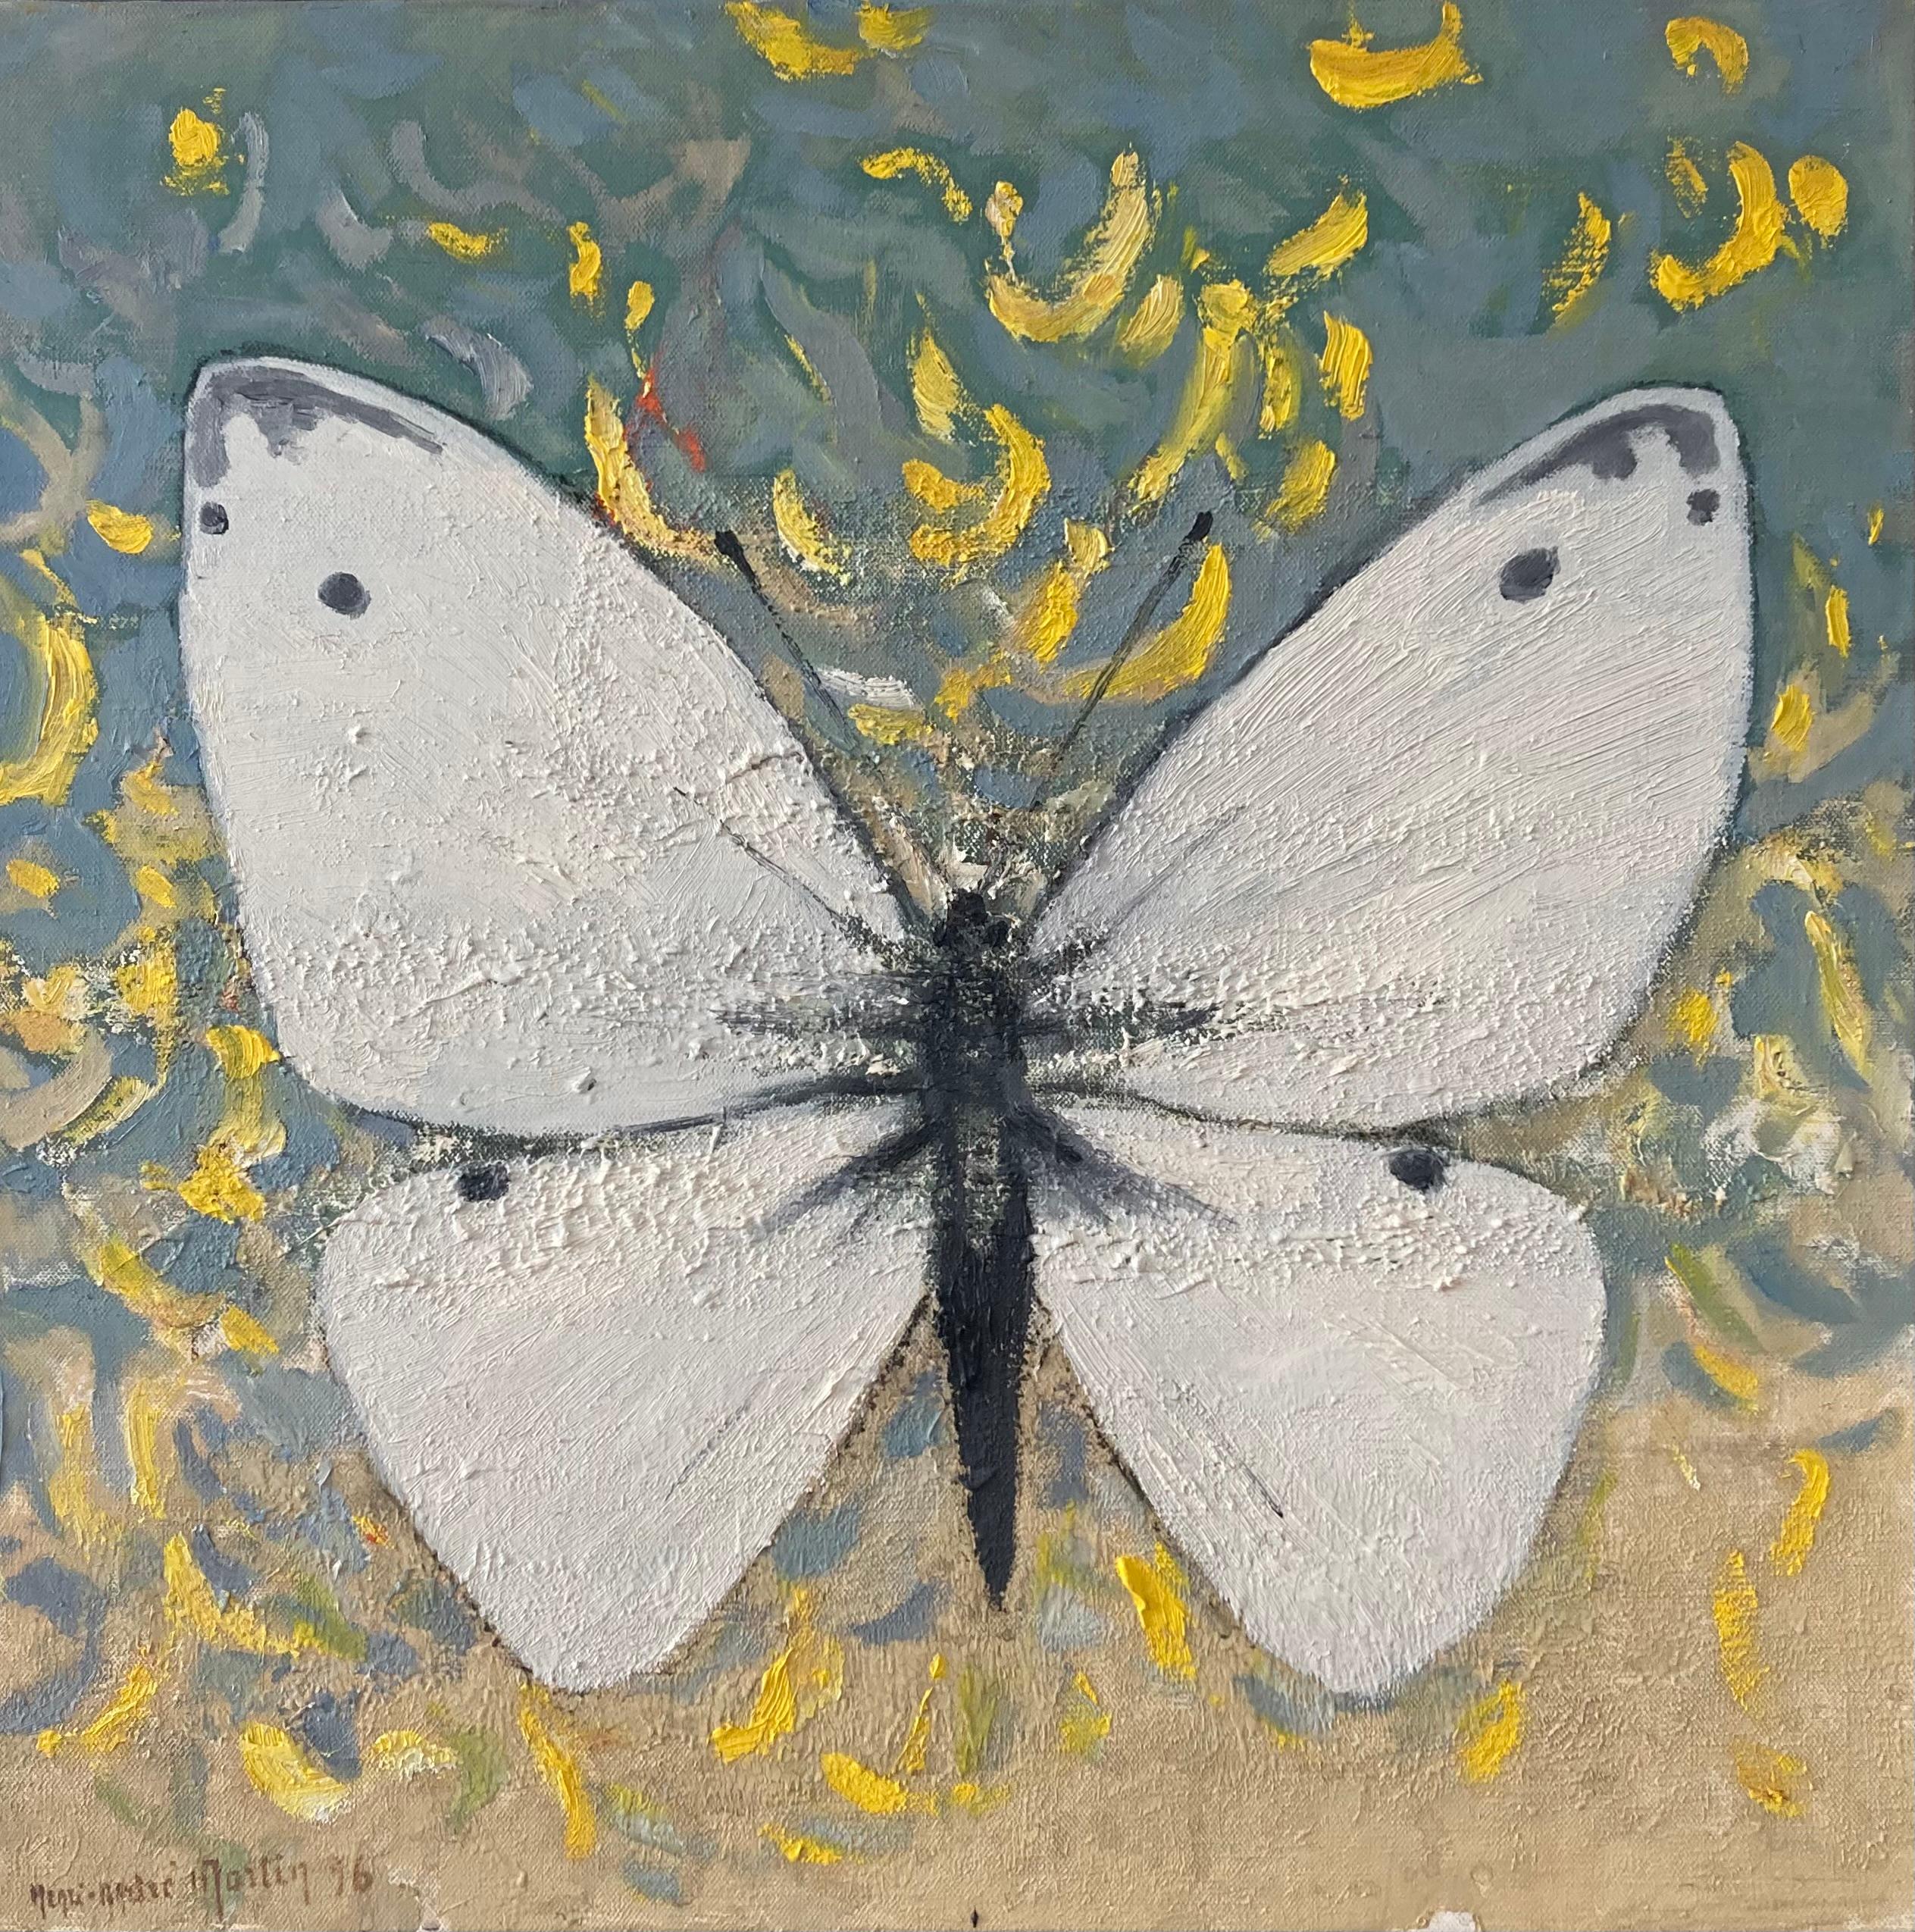 Une image incroyablement frappante d'un papillon blanc sur fond de pétales jaunes. Peint avec beaucoup d'énergie et avec une texture très attrayante à la surface de la peinture. Whiting est superbe sur un mur blanc.

Henri-André Martin